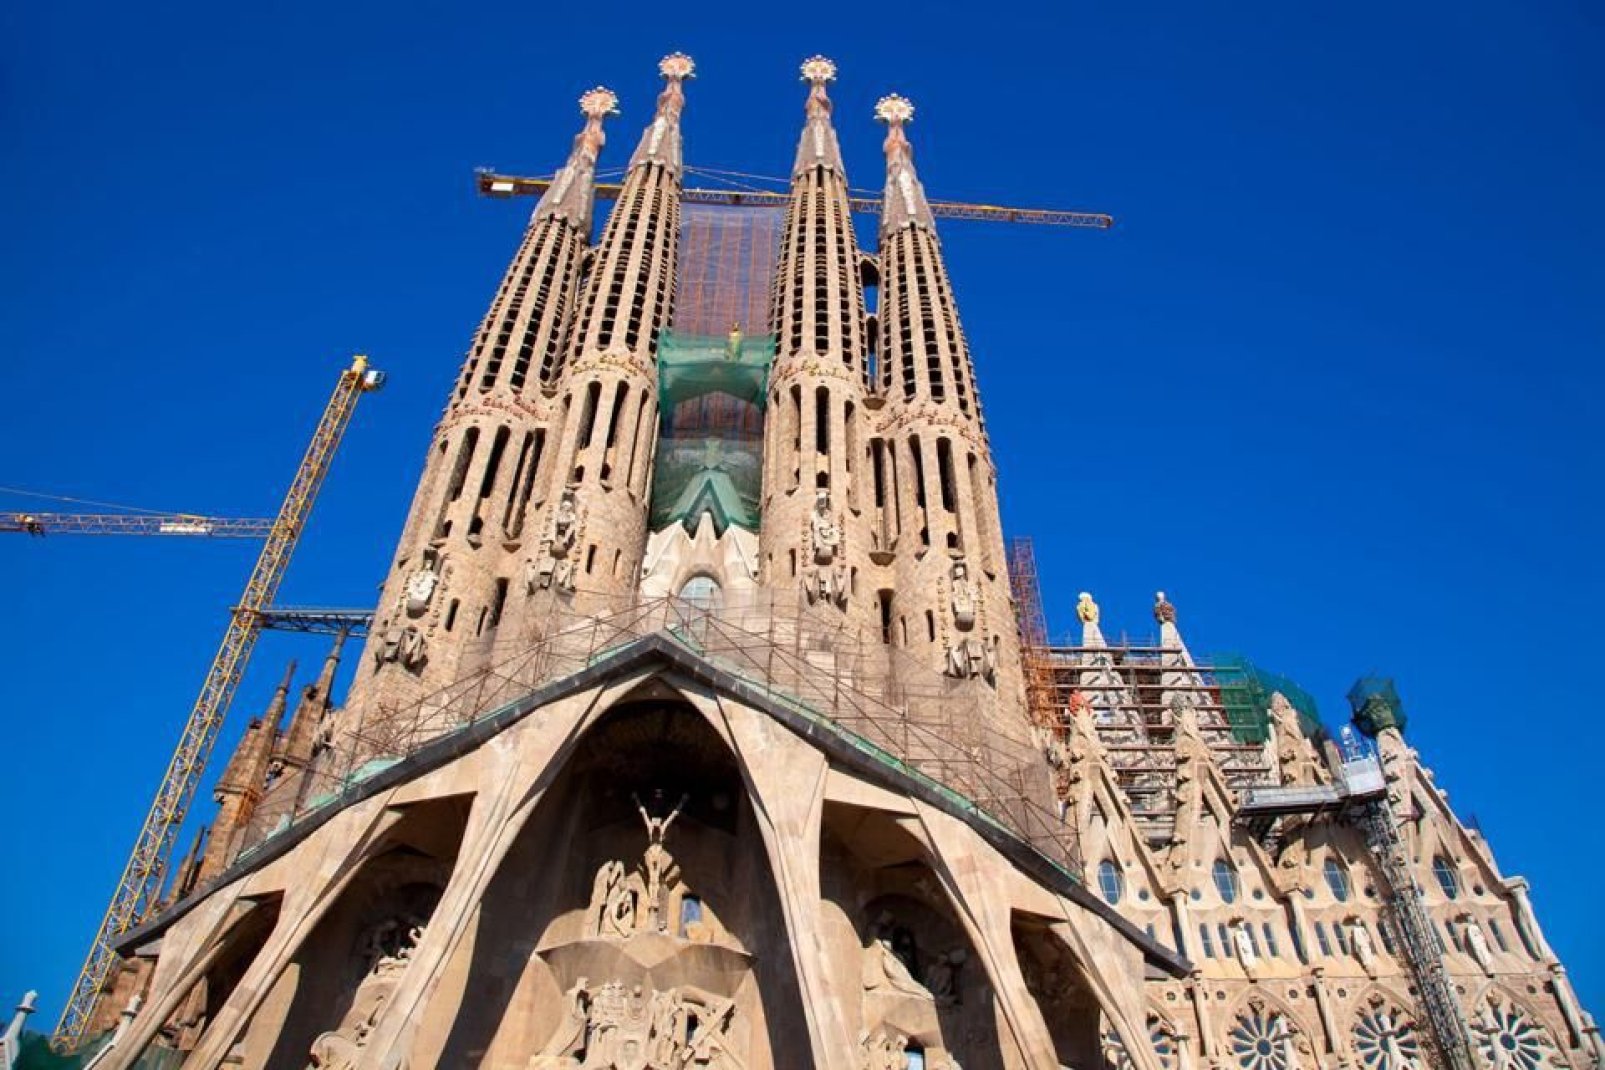 Sagrada Familia ist das Lebenswerk von Antoni Gaudi. Es handelt sich um das meistbesuchte Monument Spaniens. Die Kathedrale ist bis heute unvollendet.